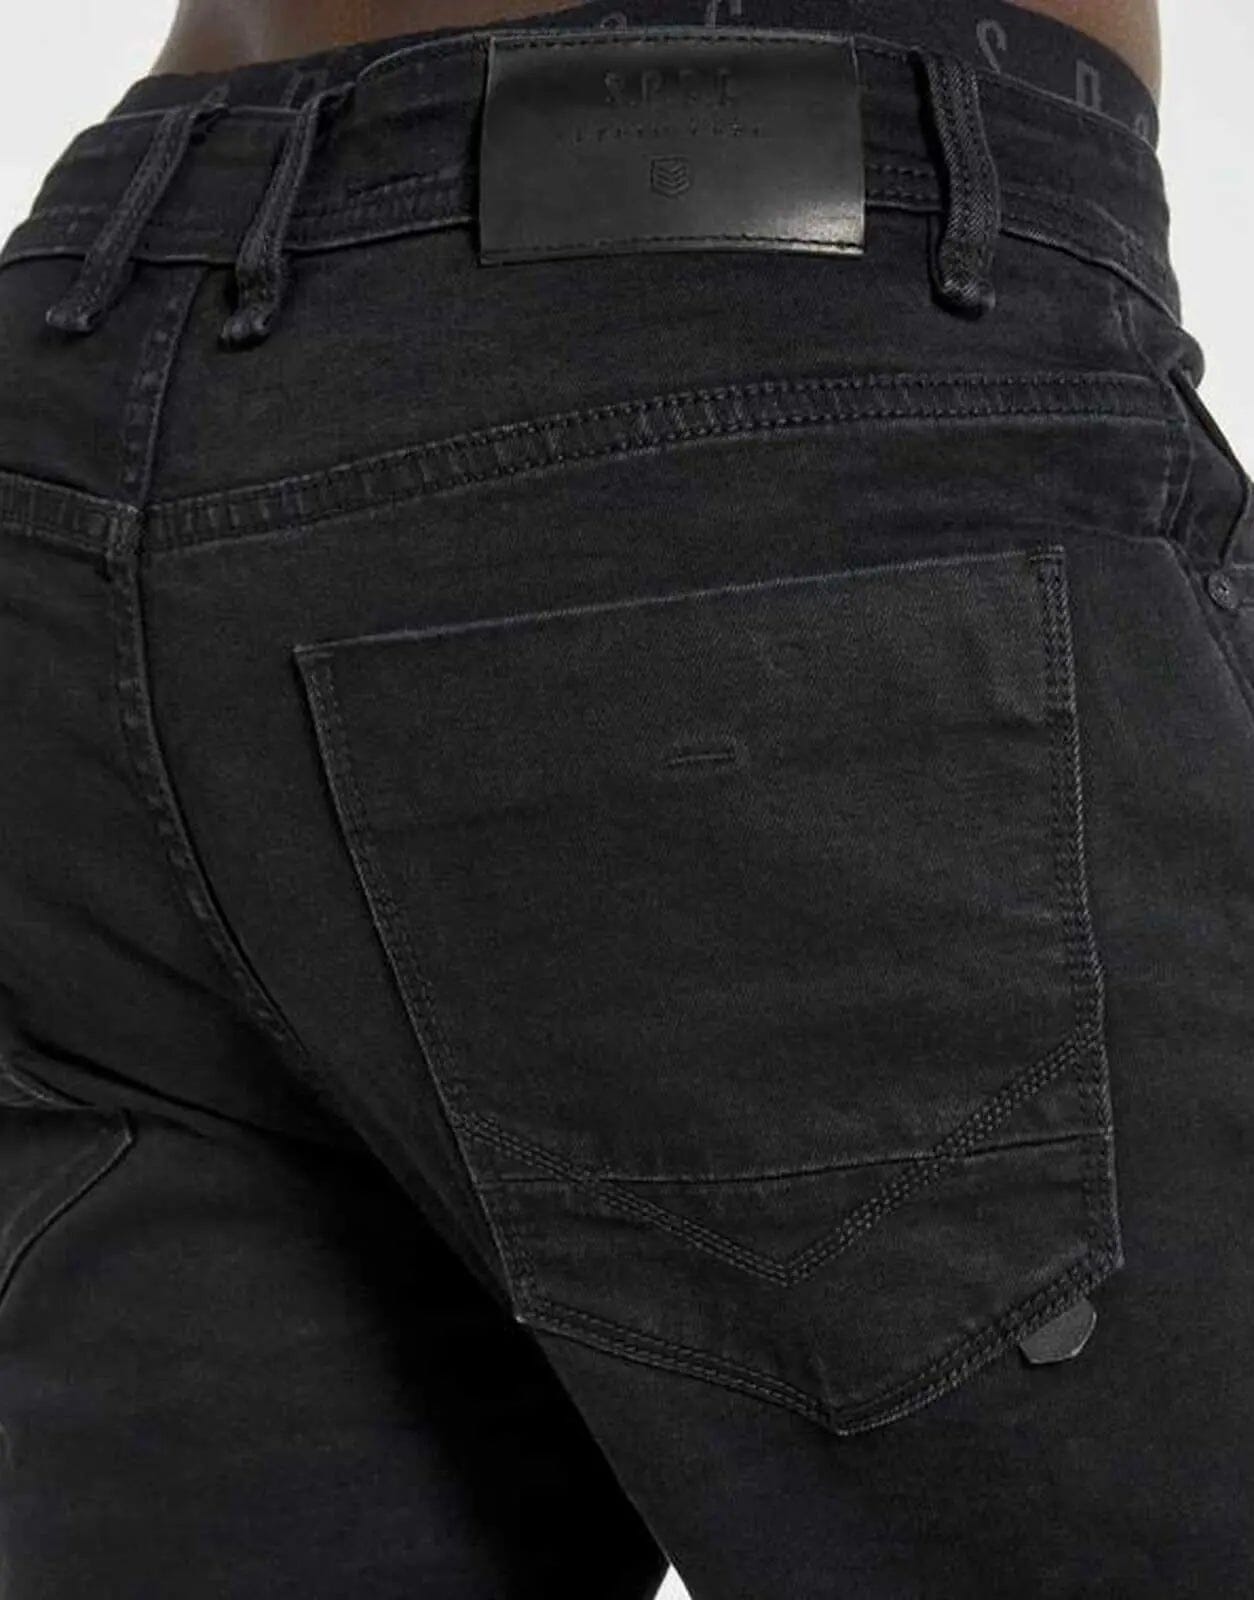 SPCC Black Pearl Jeans - Subwear